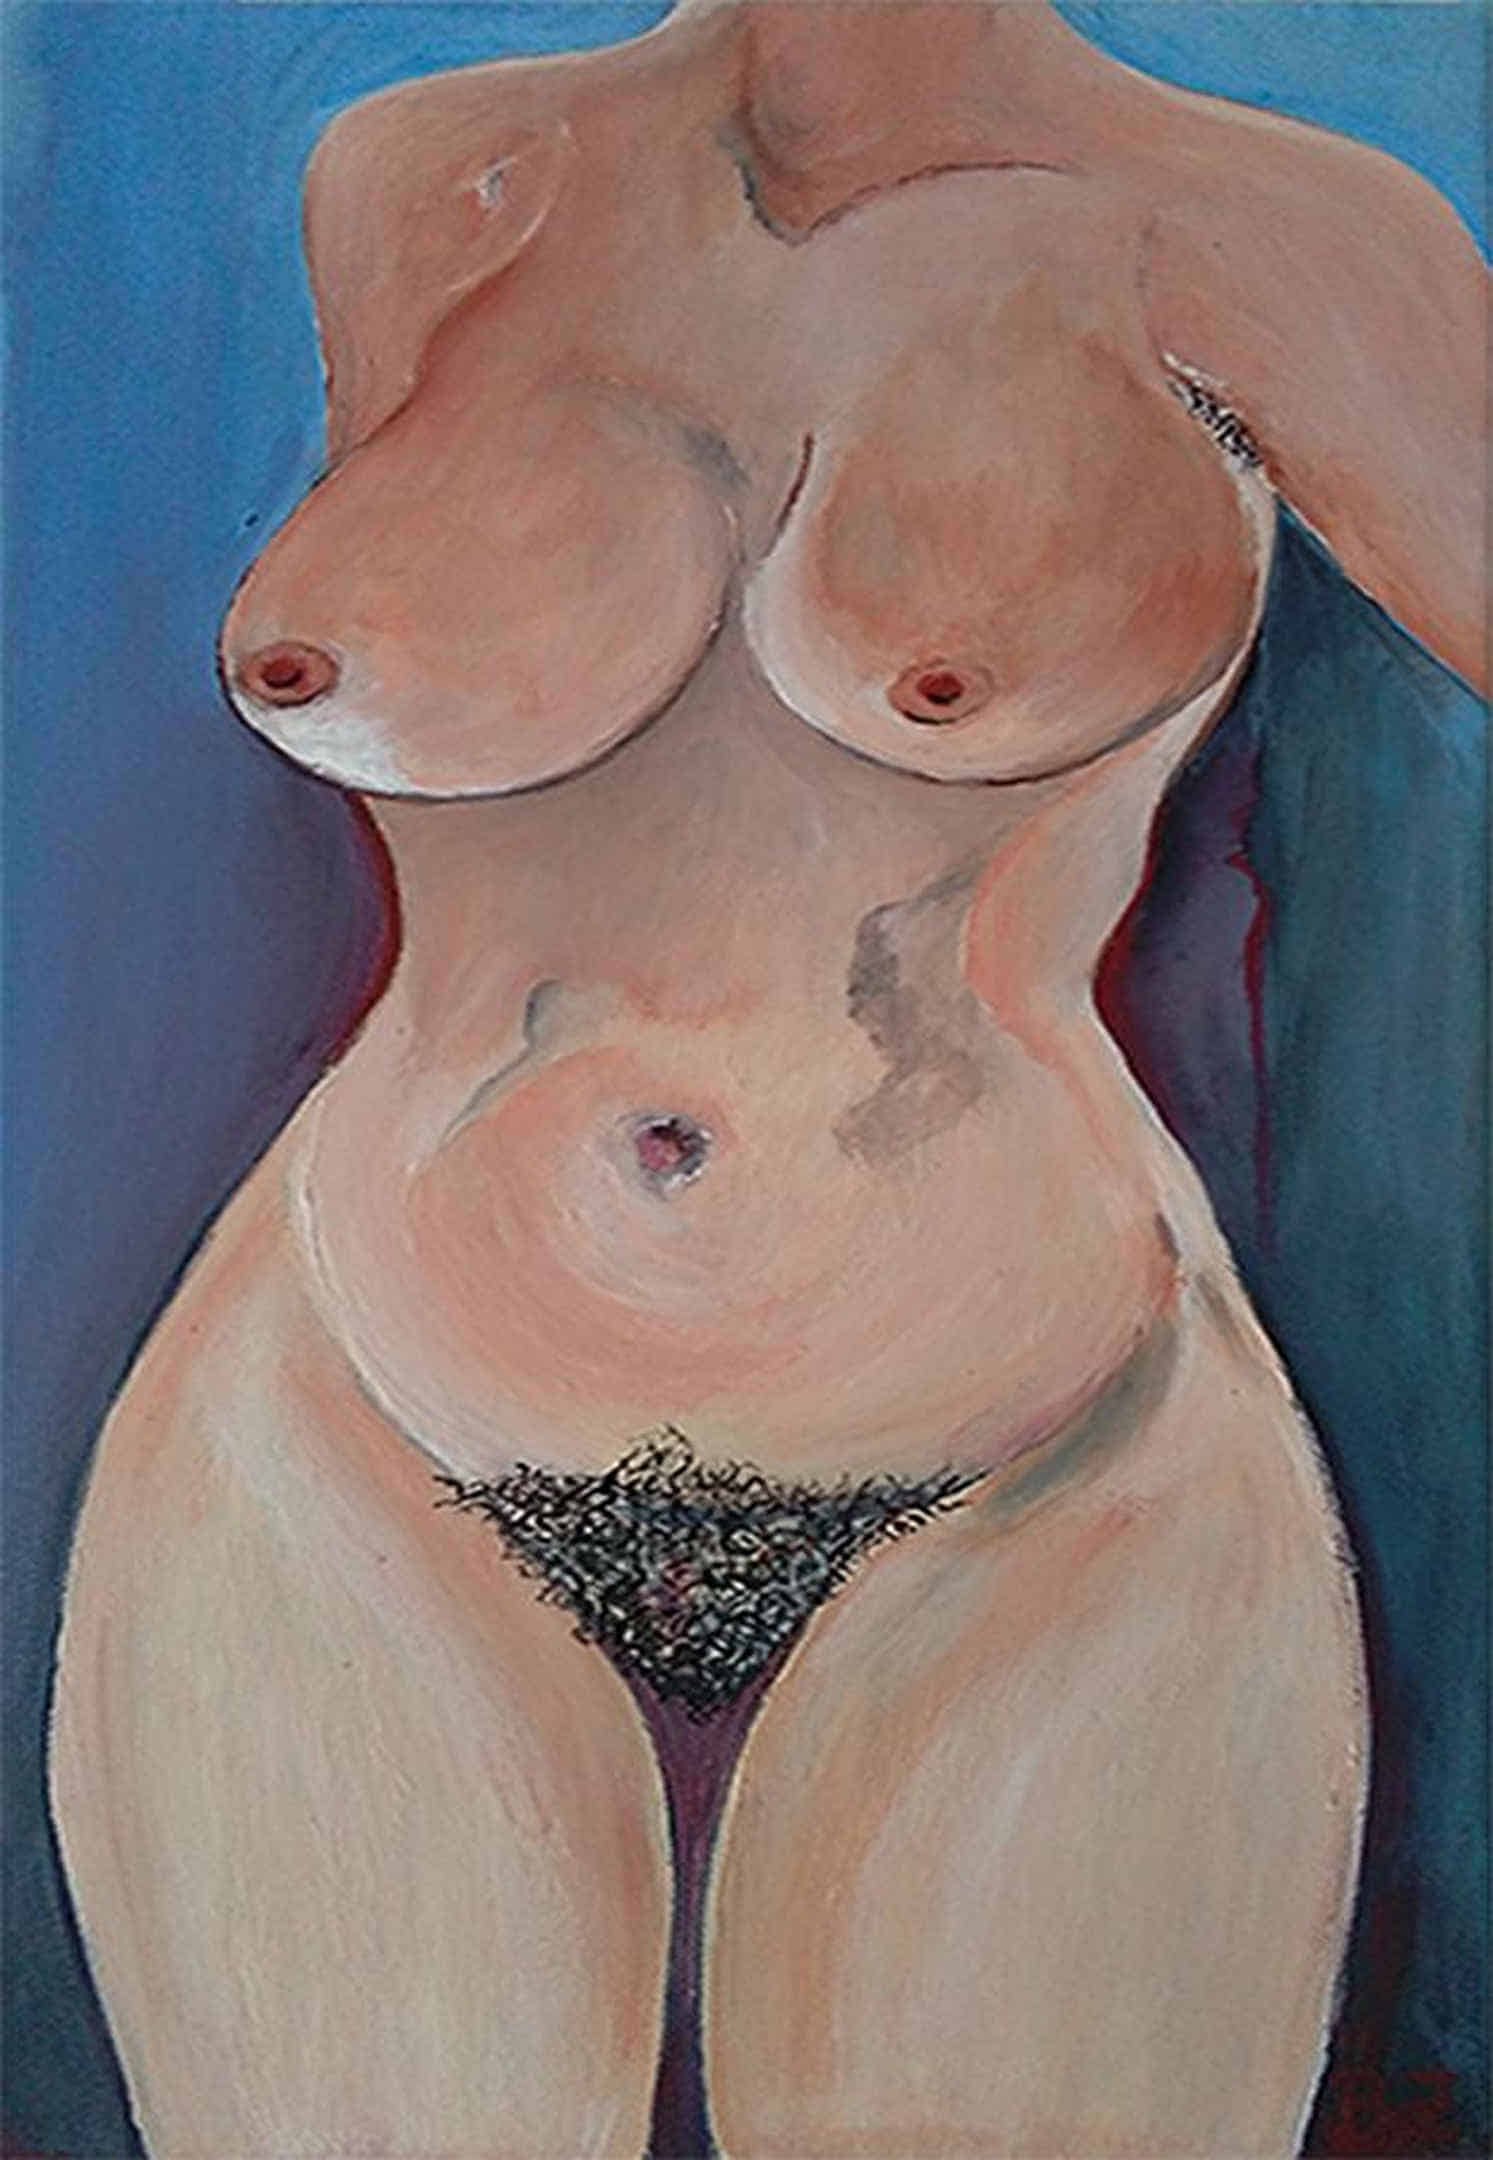 Gemälde: Eine üppige nackte Frau steht vor einem blauen Hintergrund.